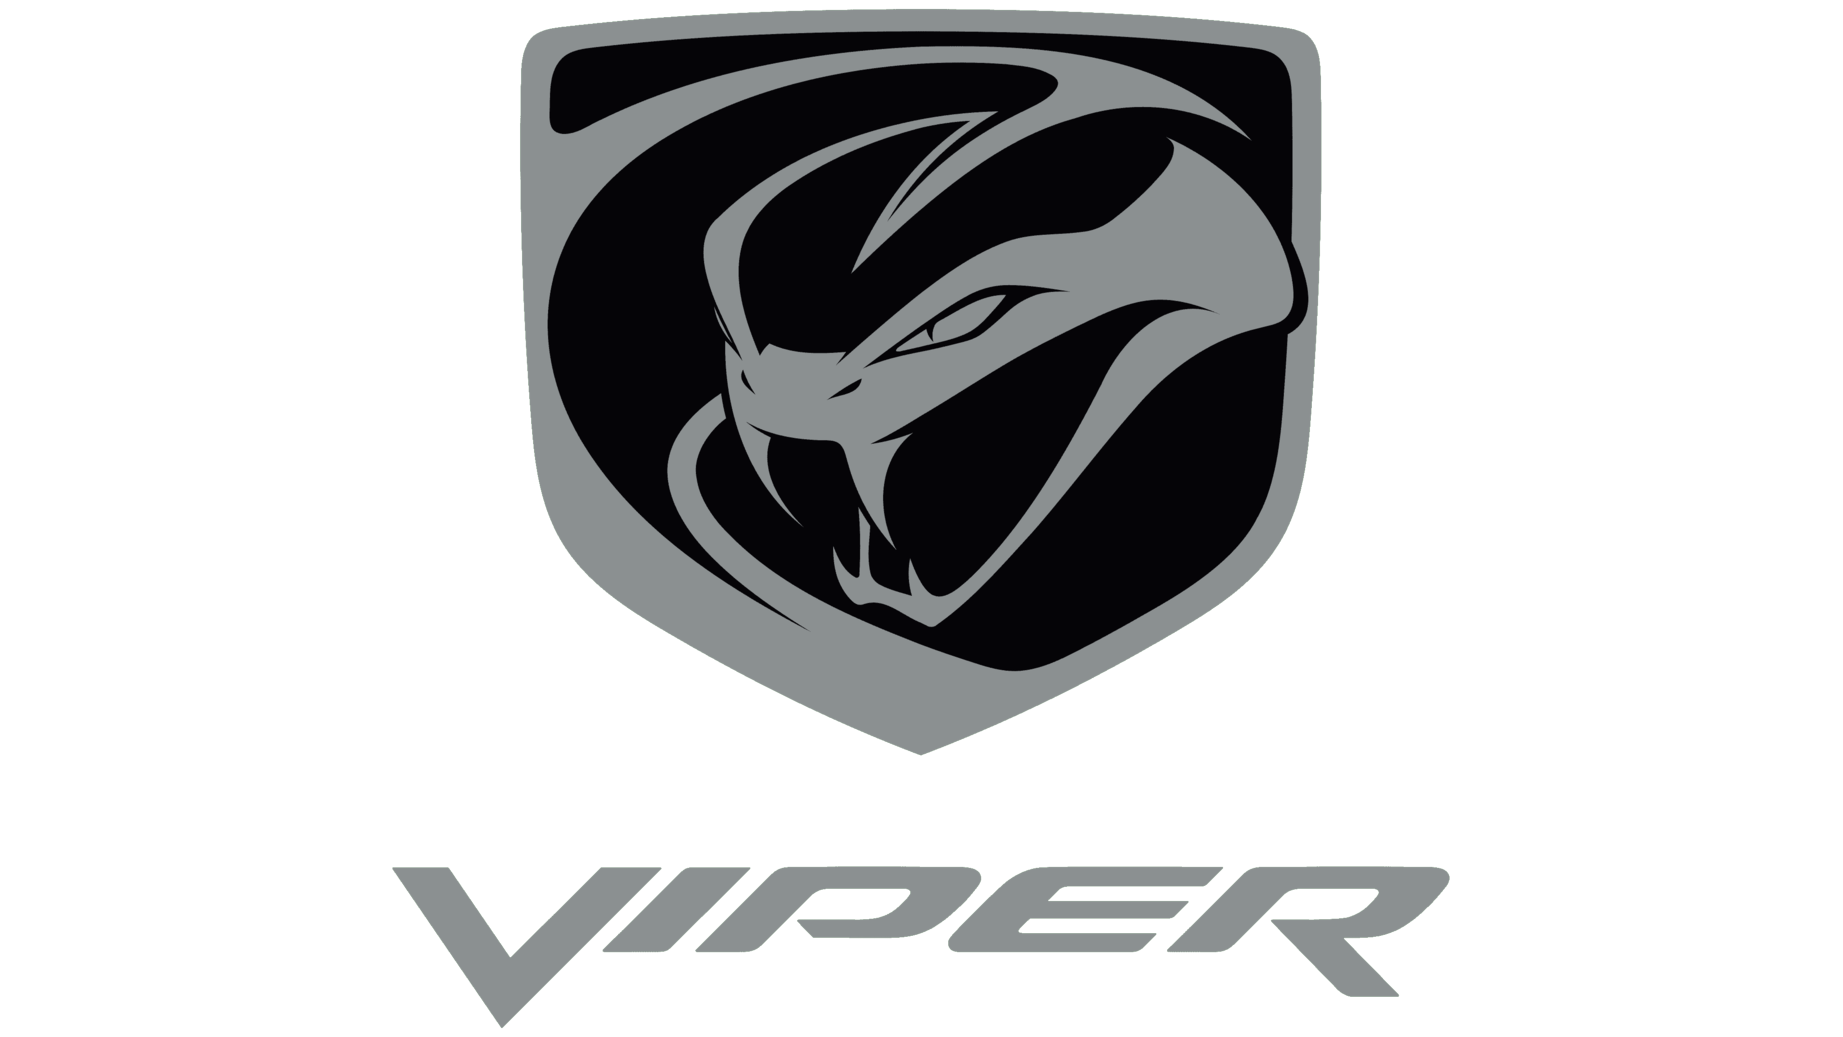 Viper sign